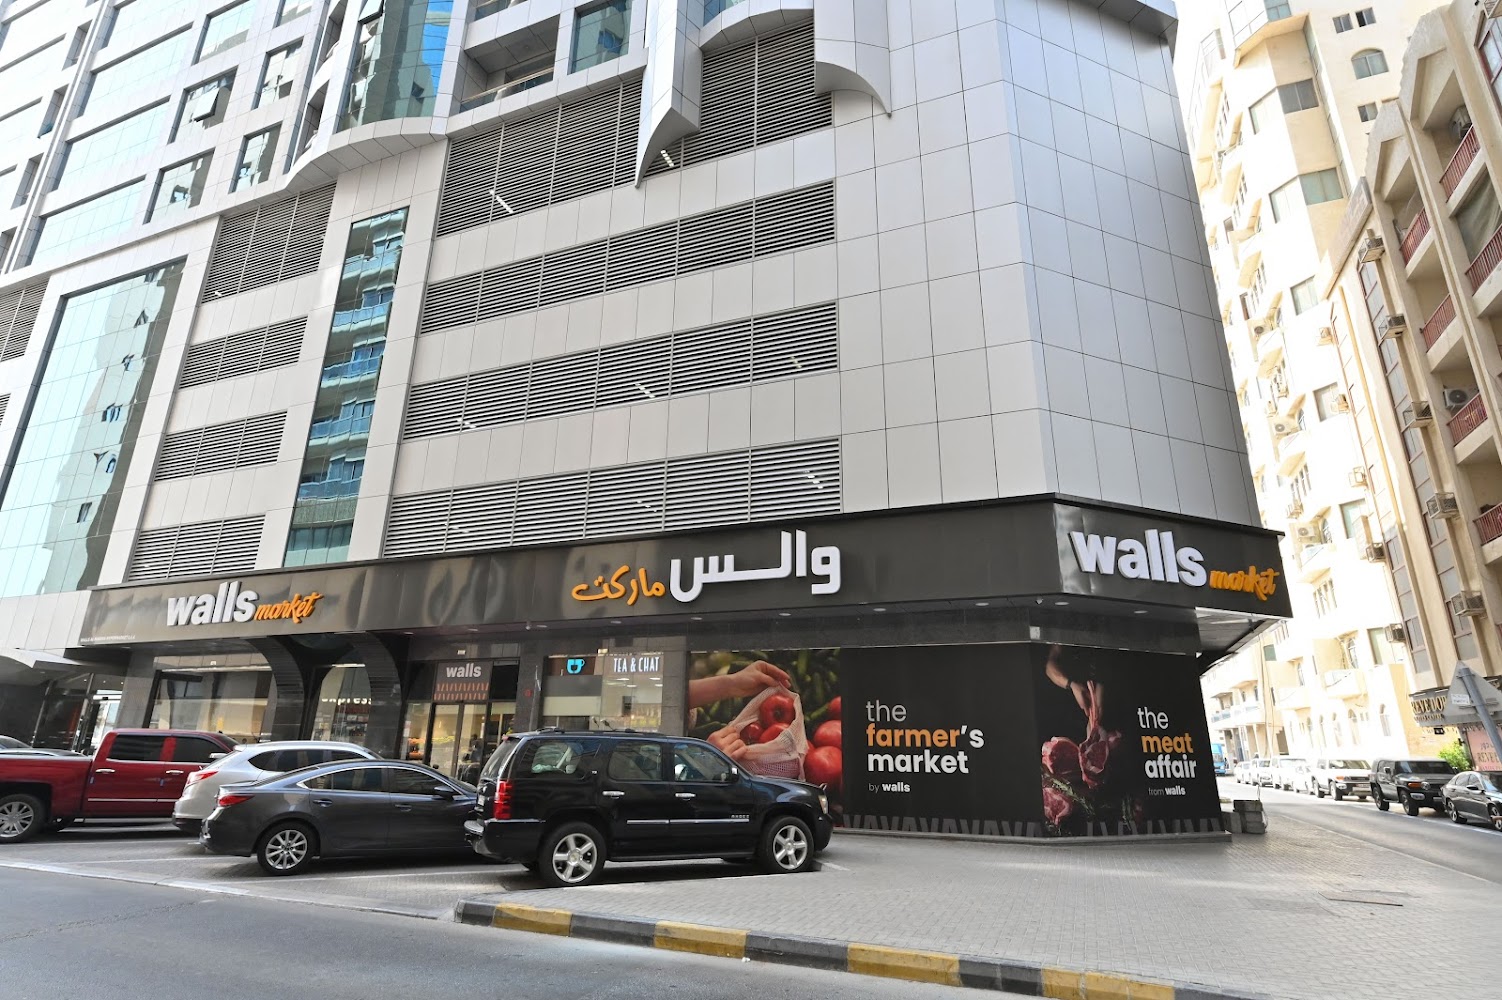 Walls Market Sharjah